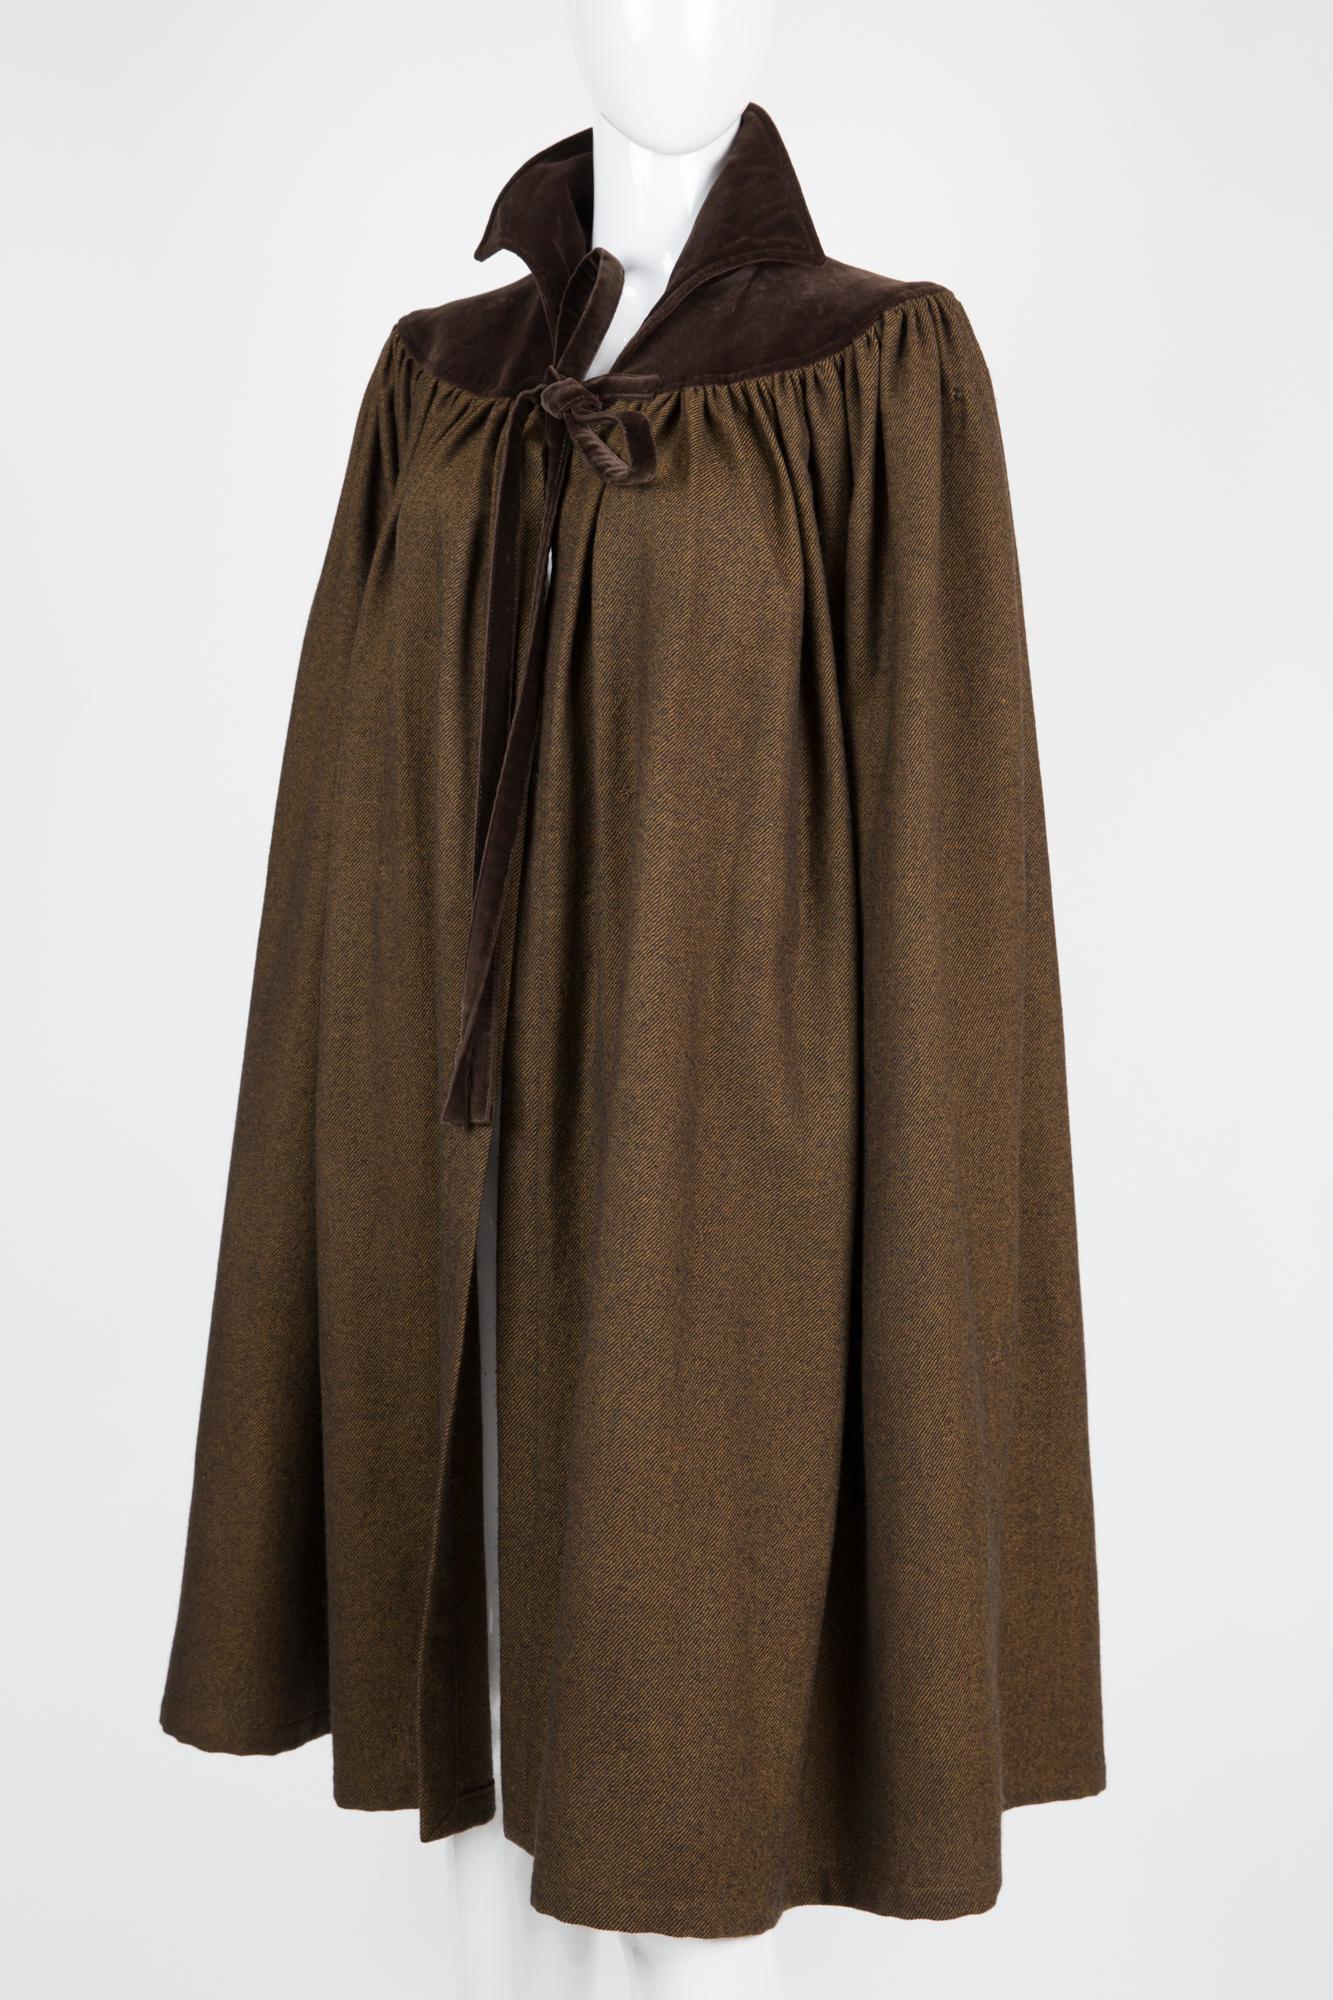 1800s cloak